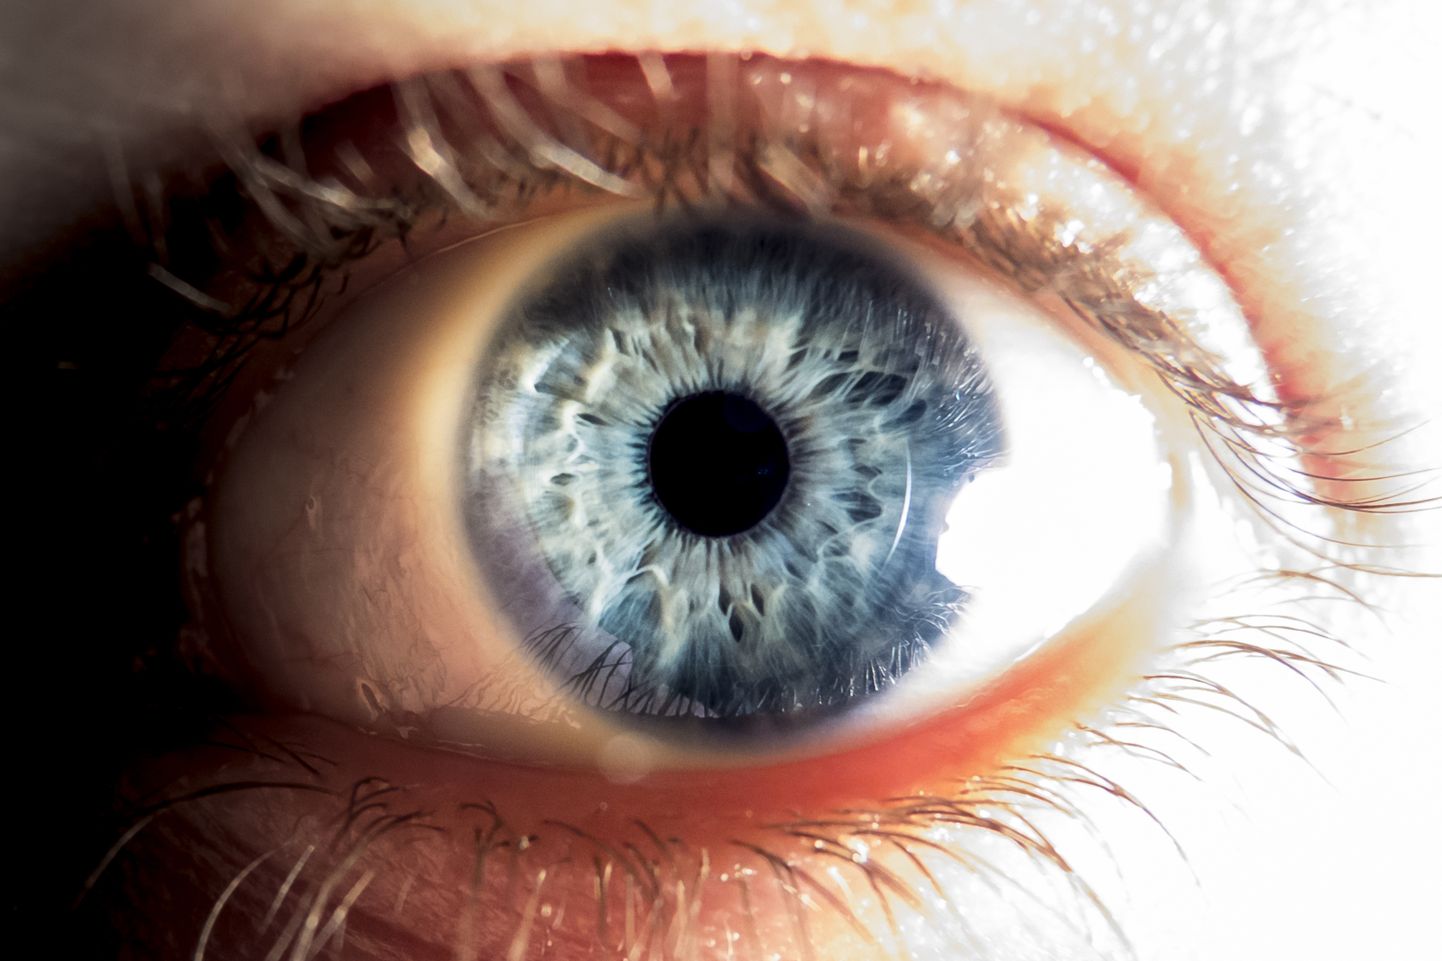 Laserosutisse vaatamine võib pöördumatult kahjustada silma fotoretseptoreid, mis toodavad nägemisnärvi minevaid signaale.